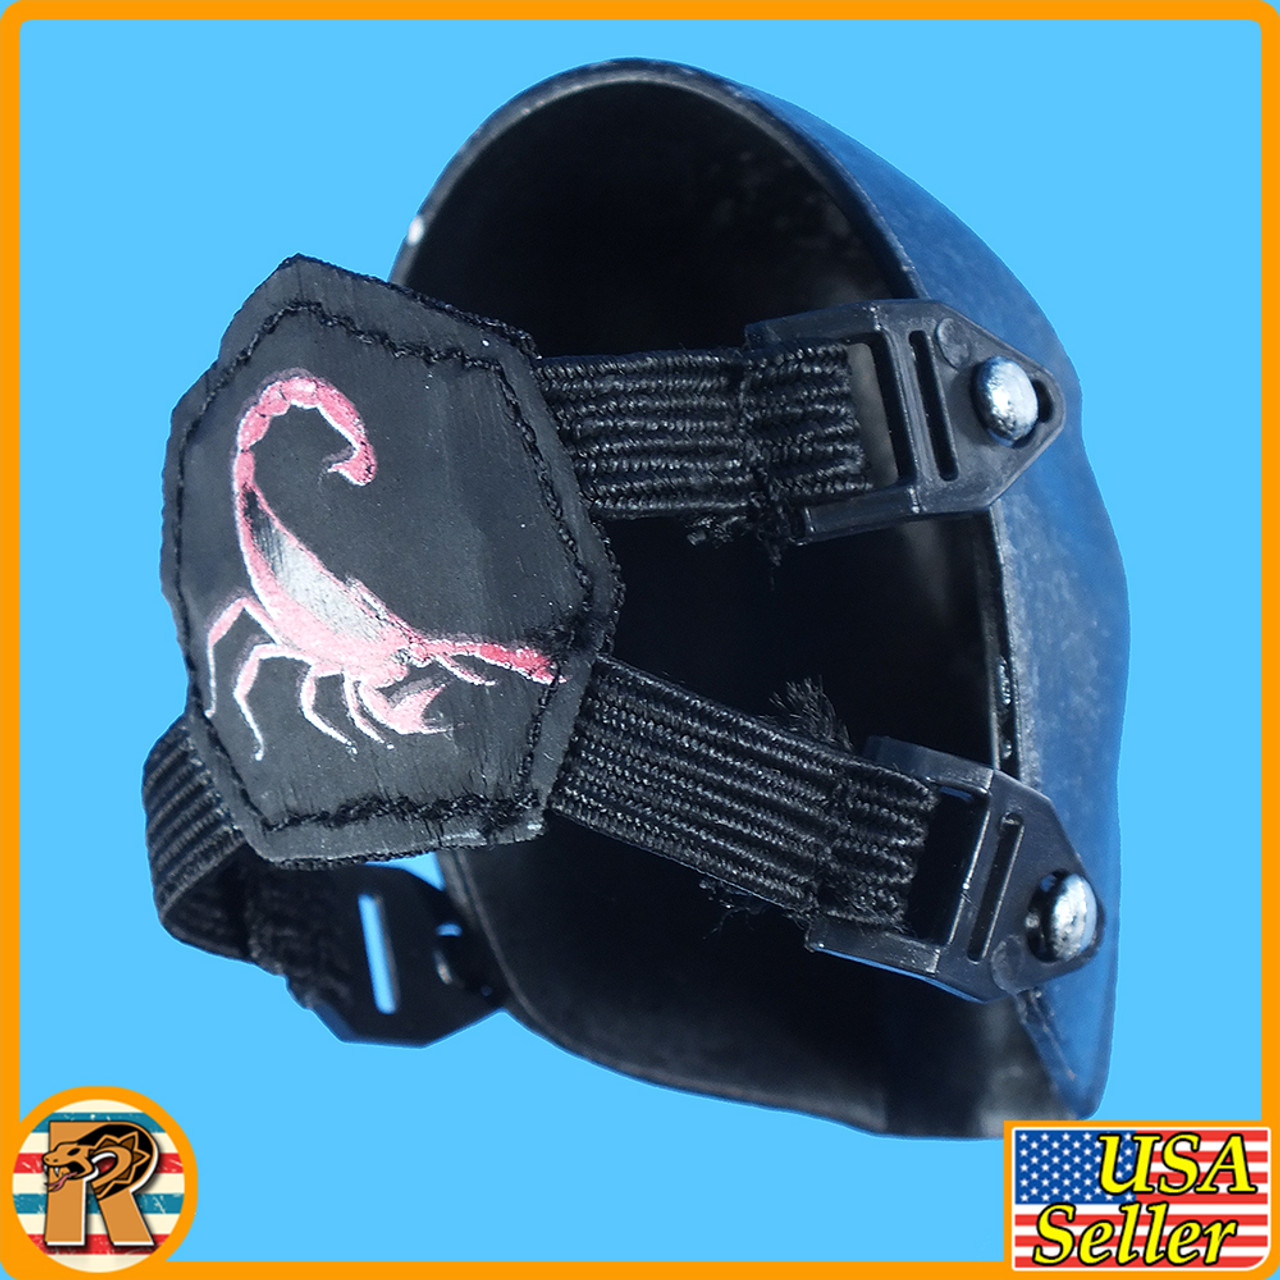 LT Combat Masks - Black #1 - 1/6 Scale -